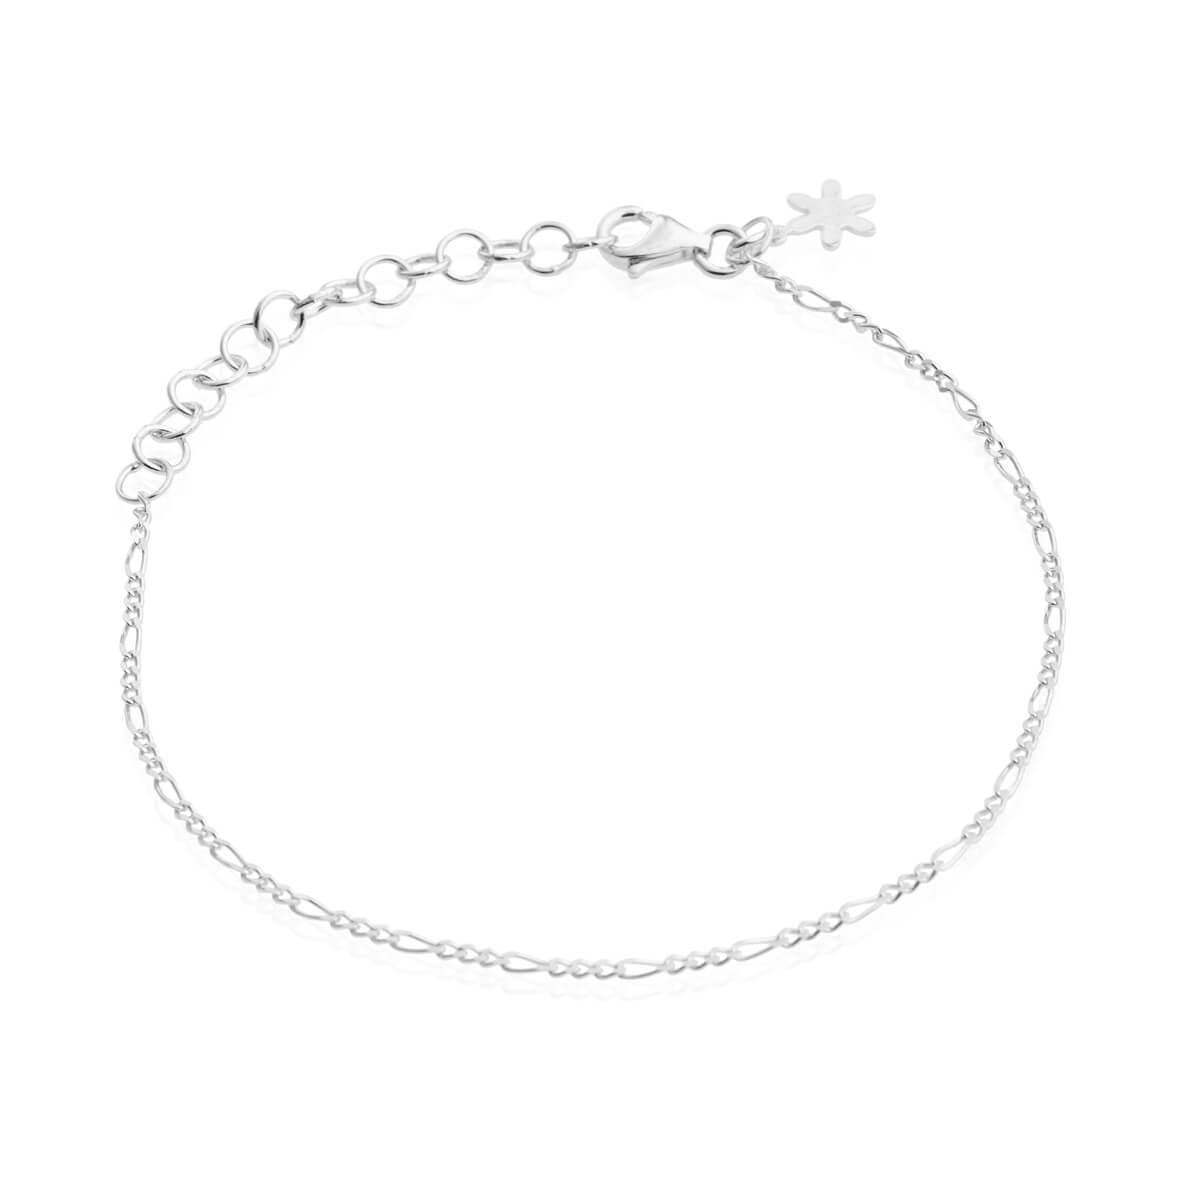 Thin simple bracelet in silver / 1837-1-20 - Susanne Friis Bjørner ...